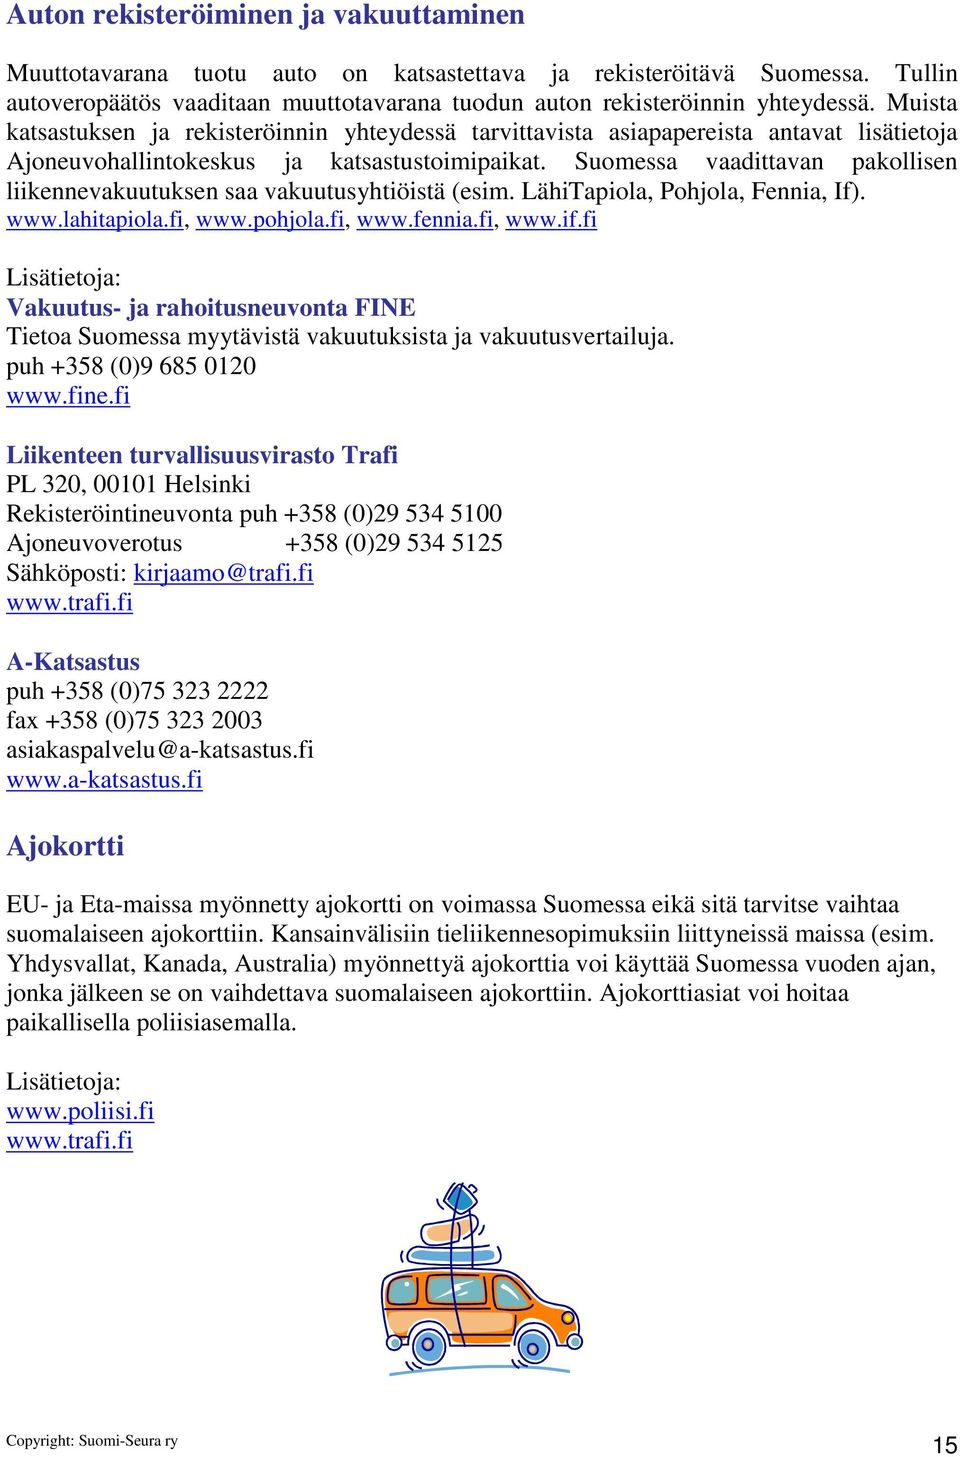 Suomessa vaadittavan pakollisen liikennevakuutuksen saa vakuutusyhtiöistä (esim. LähiTapiola, Pohjola, Fennia, If). www.lahitapiola.fi, www.pohjola.fi, www.fennia.fi, www.if.